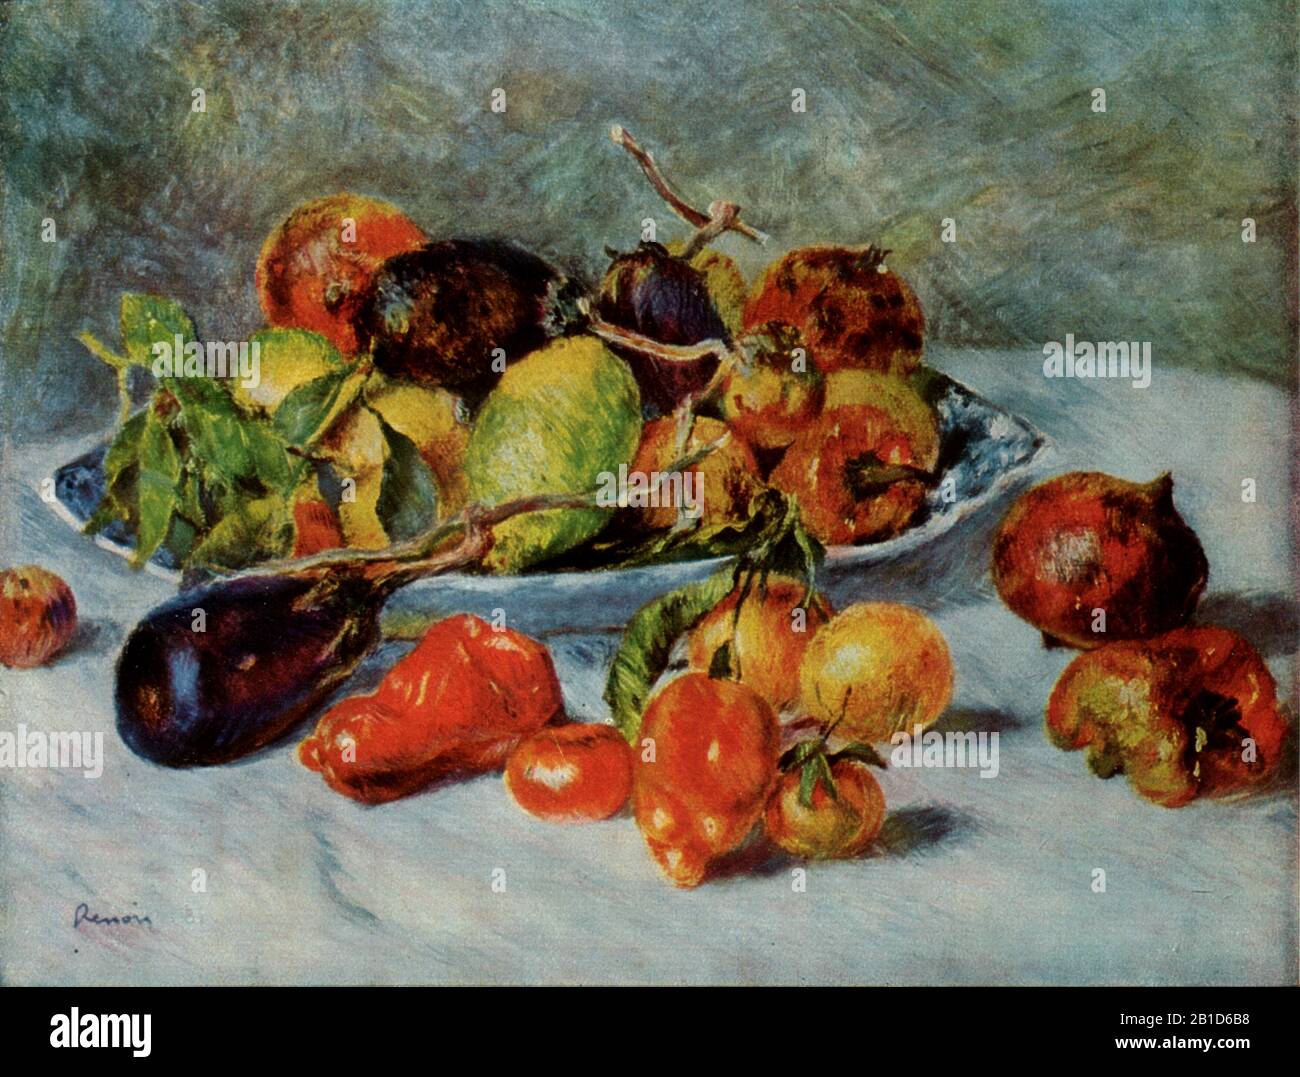 Still Life with Mediterranean Fruit (1911) - Pittura inizio 20th Secolo di Pierre-Auguste Renoir - immagine Ad Altissima risoluzione e qualità Foto Stock